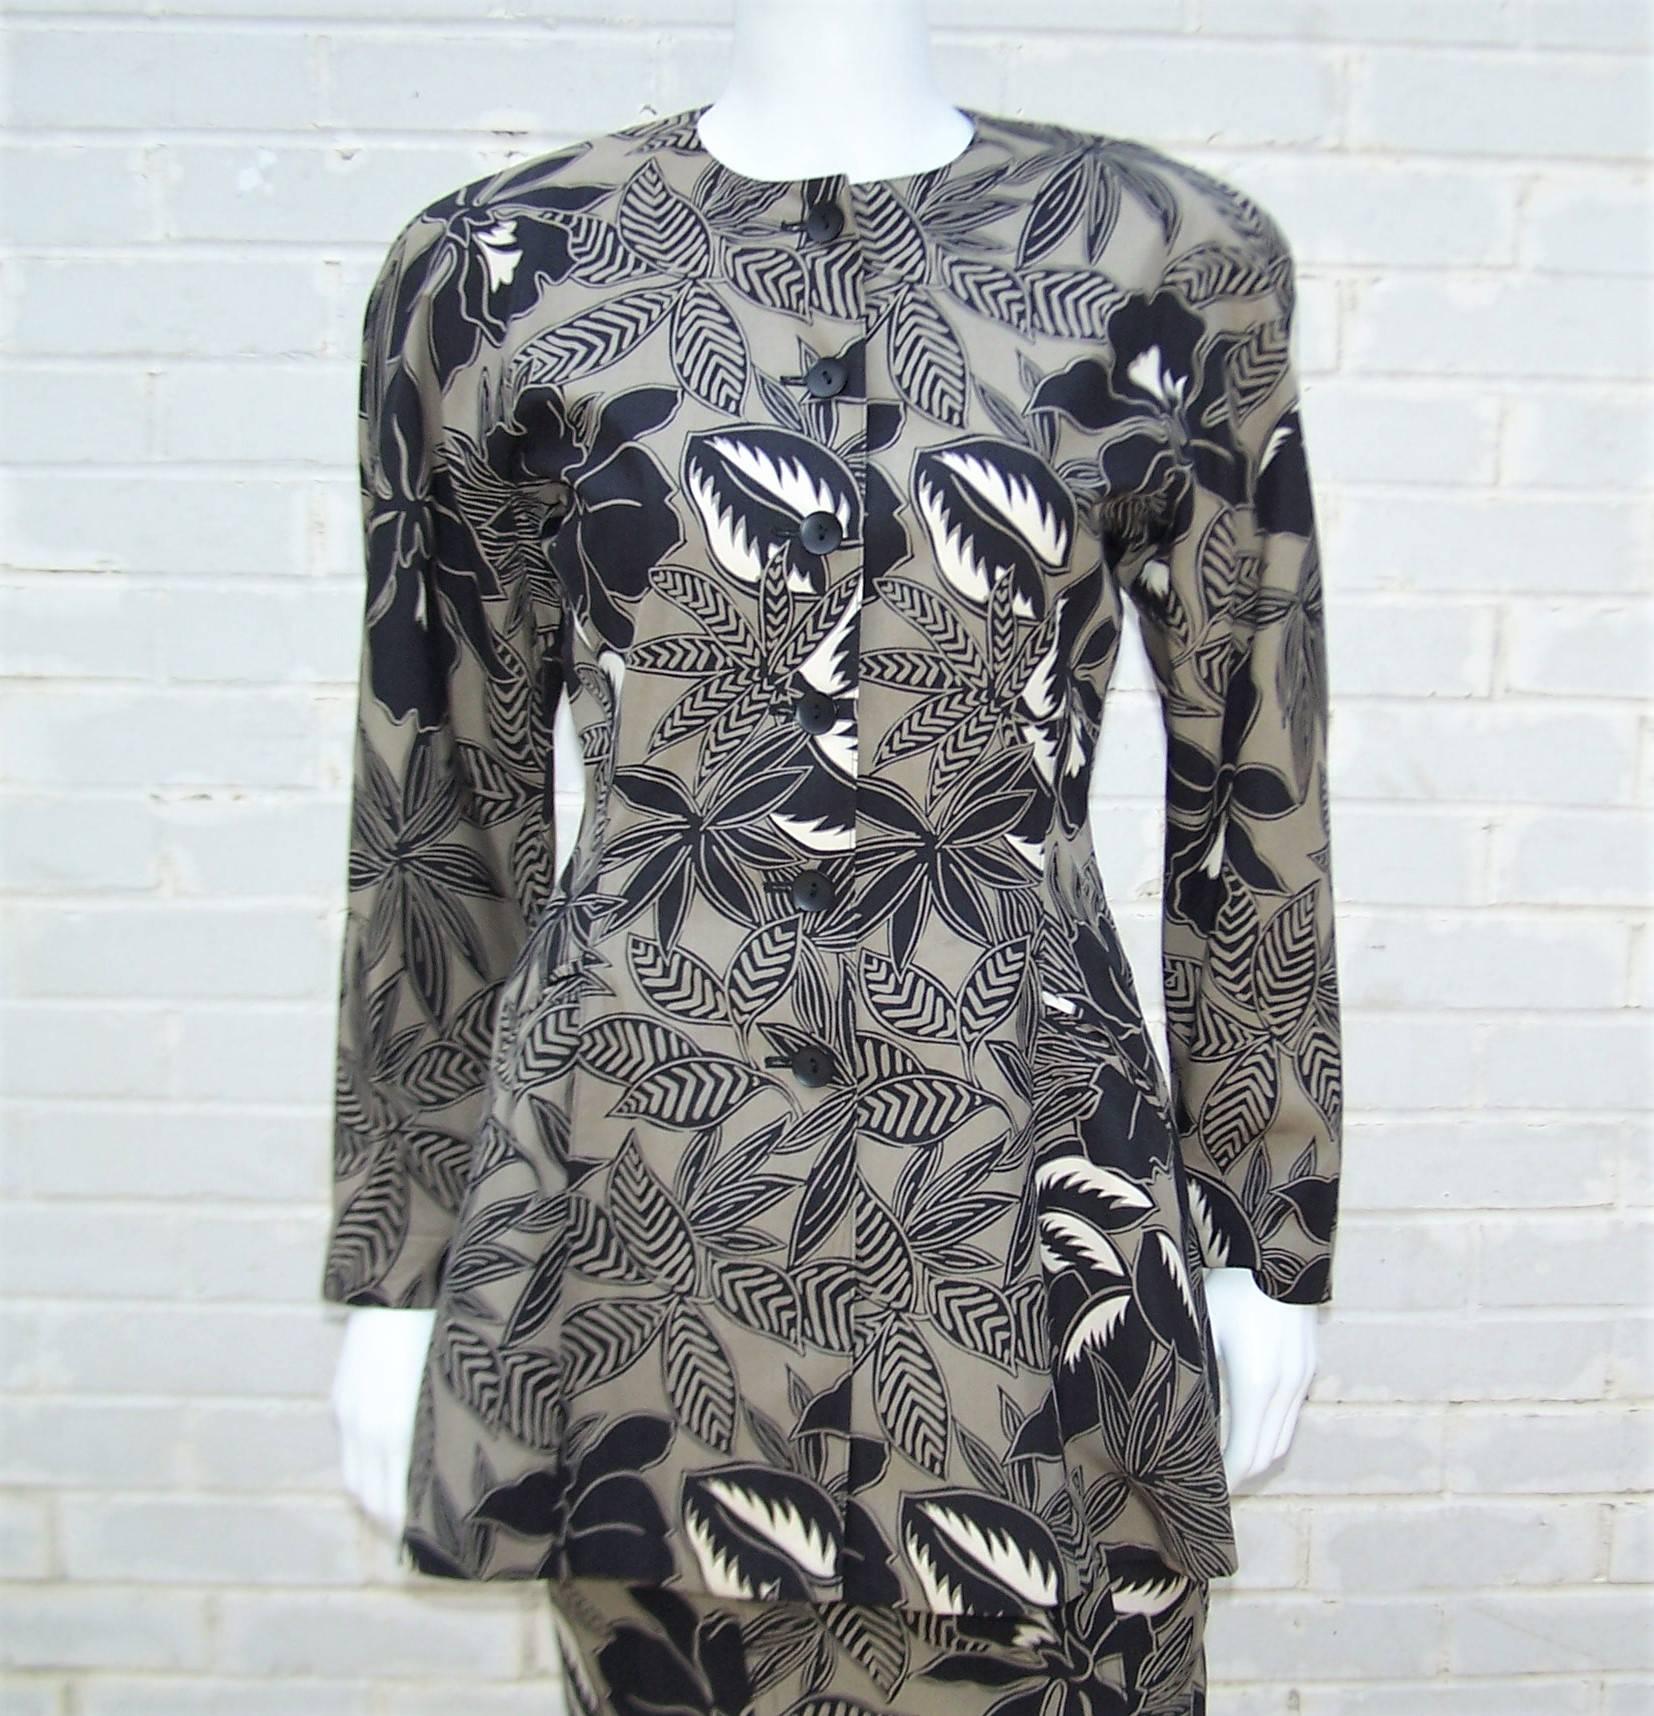 Certaines des plus belles tenues de soirée des années 1980 sont nées de l'esprit artistique de Margaretha Ley et de son label Escada.  Cet amusant imprimé tropical noir et beige est un peu différent, avec un tissu en soie léger plus décontracté,